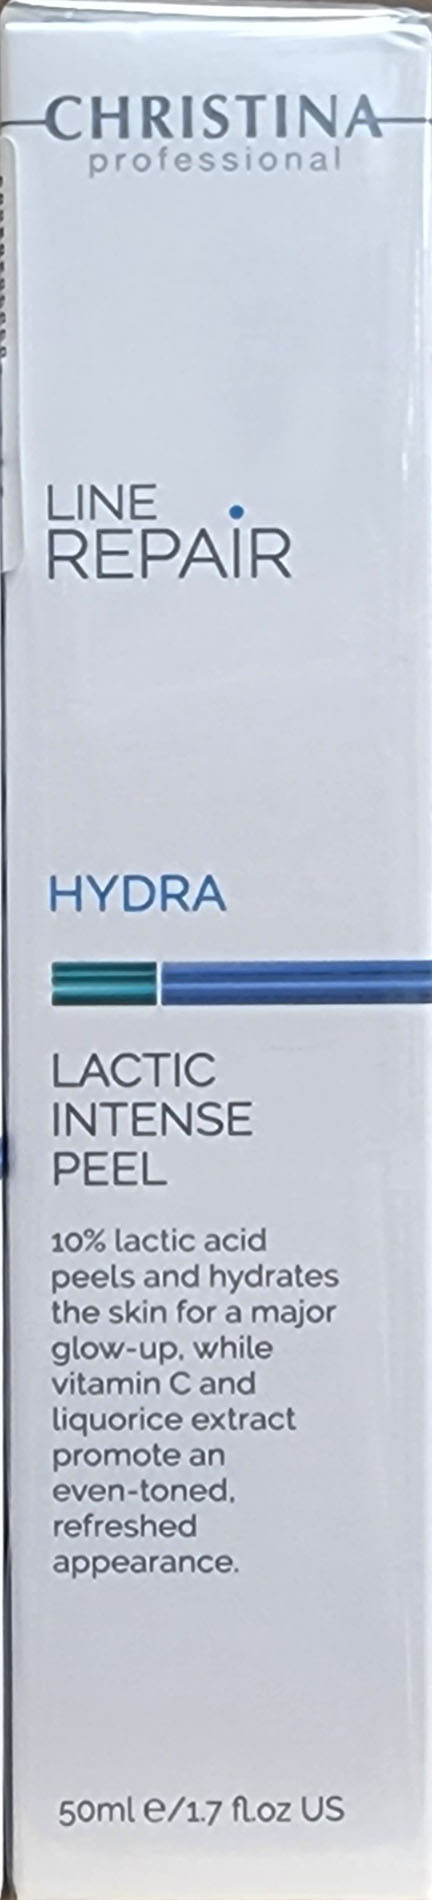 Christina Line Repair - Hydra - Lactic Intense peel 50ml